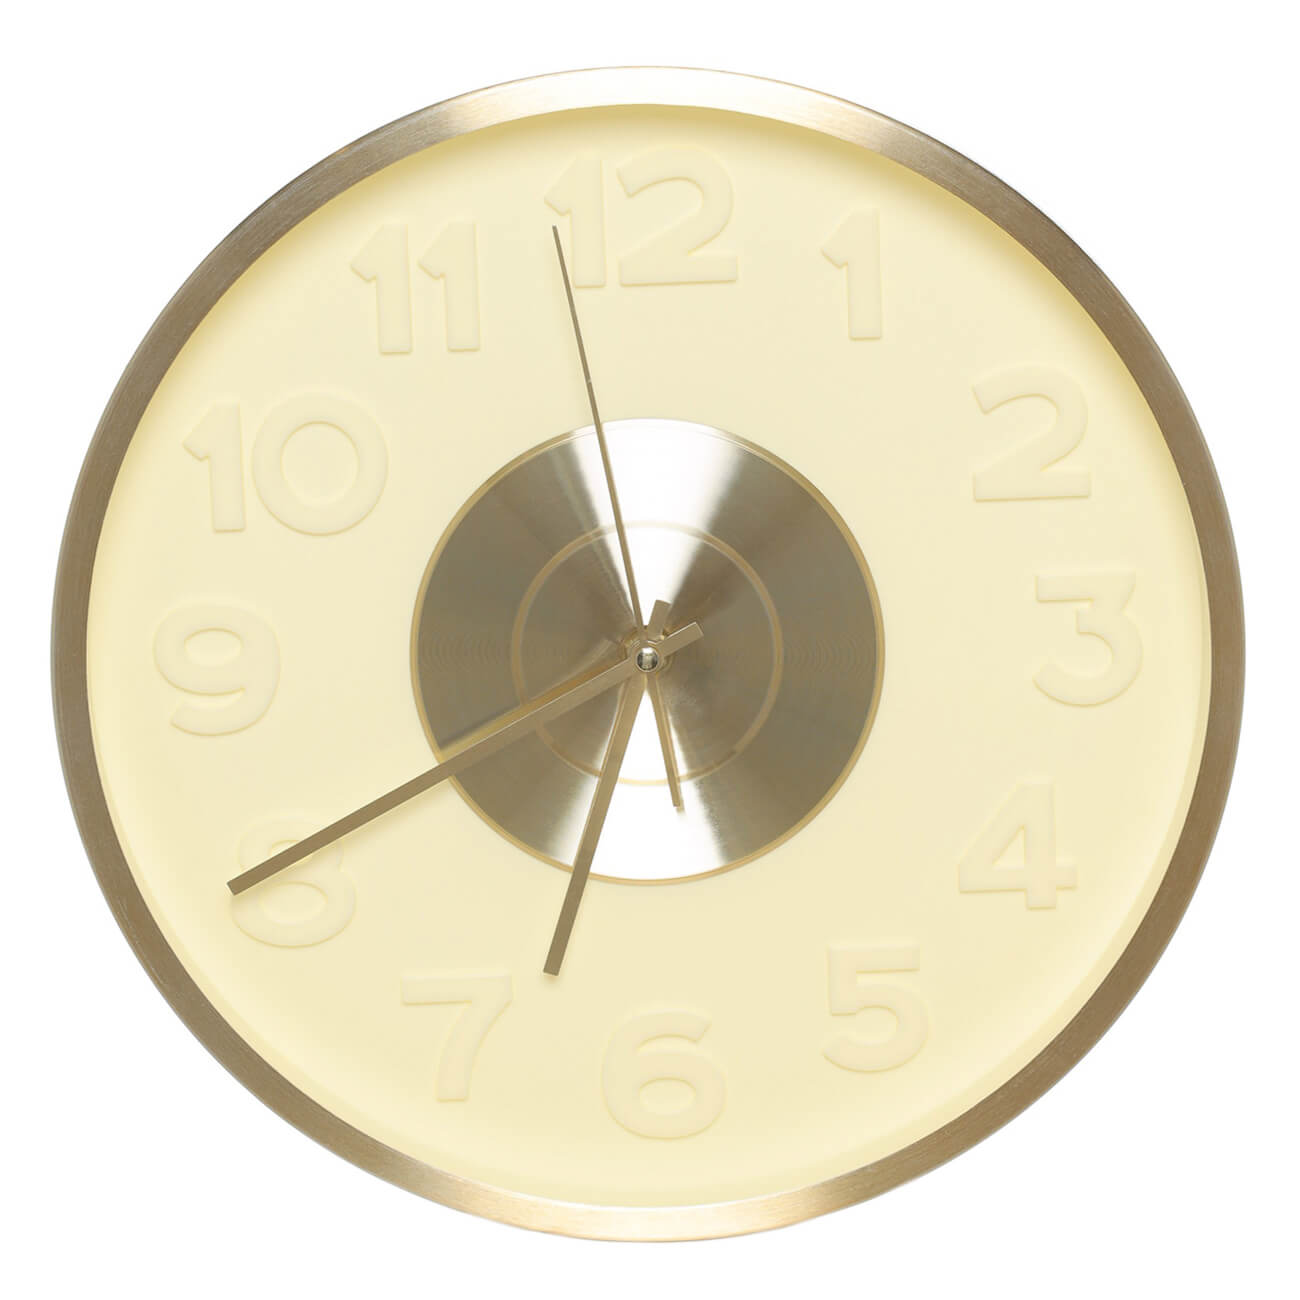 Часы настенные, 30 см, с подсветкой, пластик/стекло, круглые, золотистые, Fantastic gold круглые настенные часы